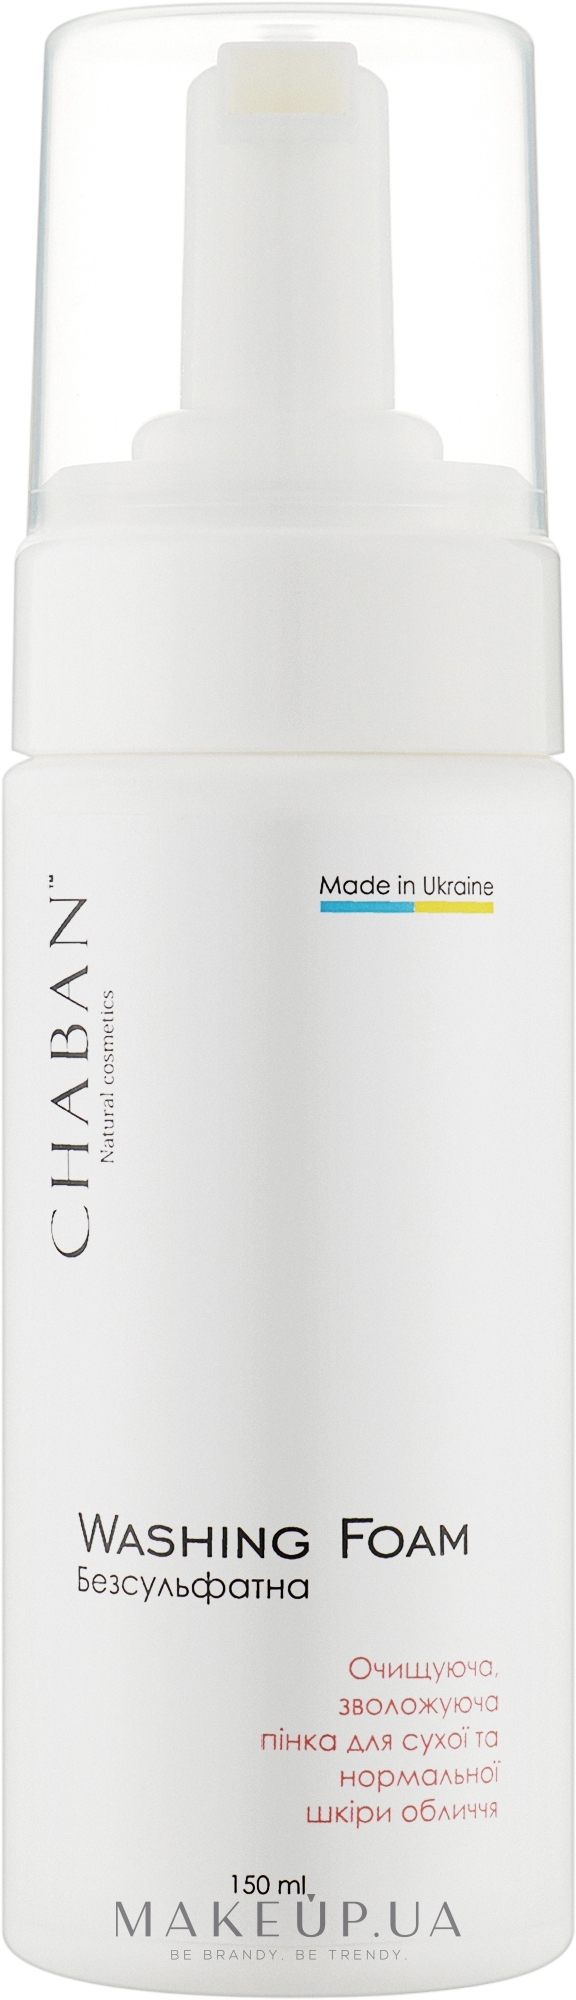 Очищуюча, зволожуюча пінка для сухої та нормальної шкіри обличчя - Chaban Natural Cosmetics Washing Foam — фото 150ml